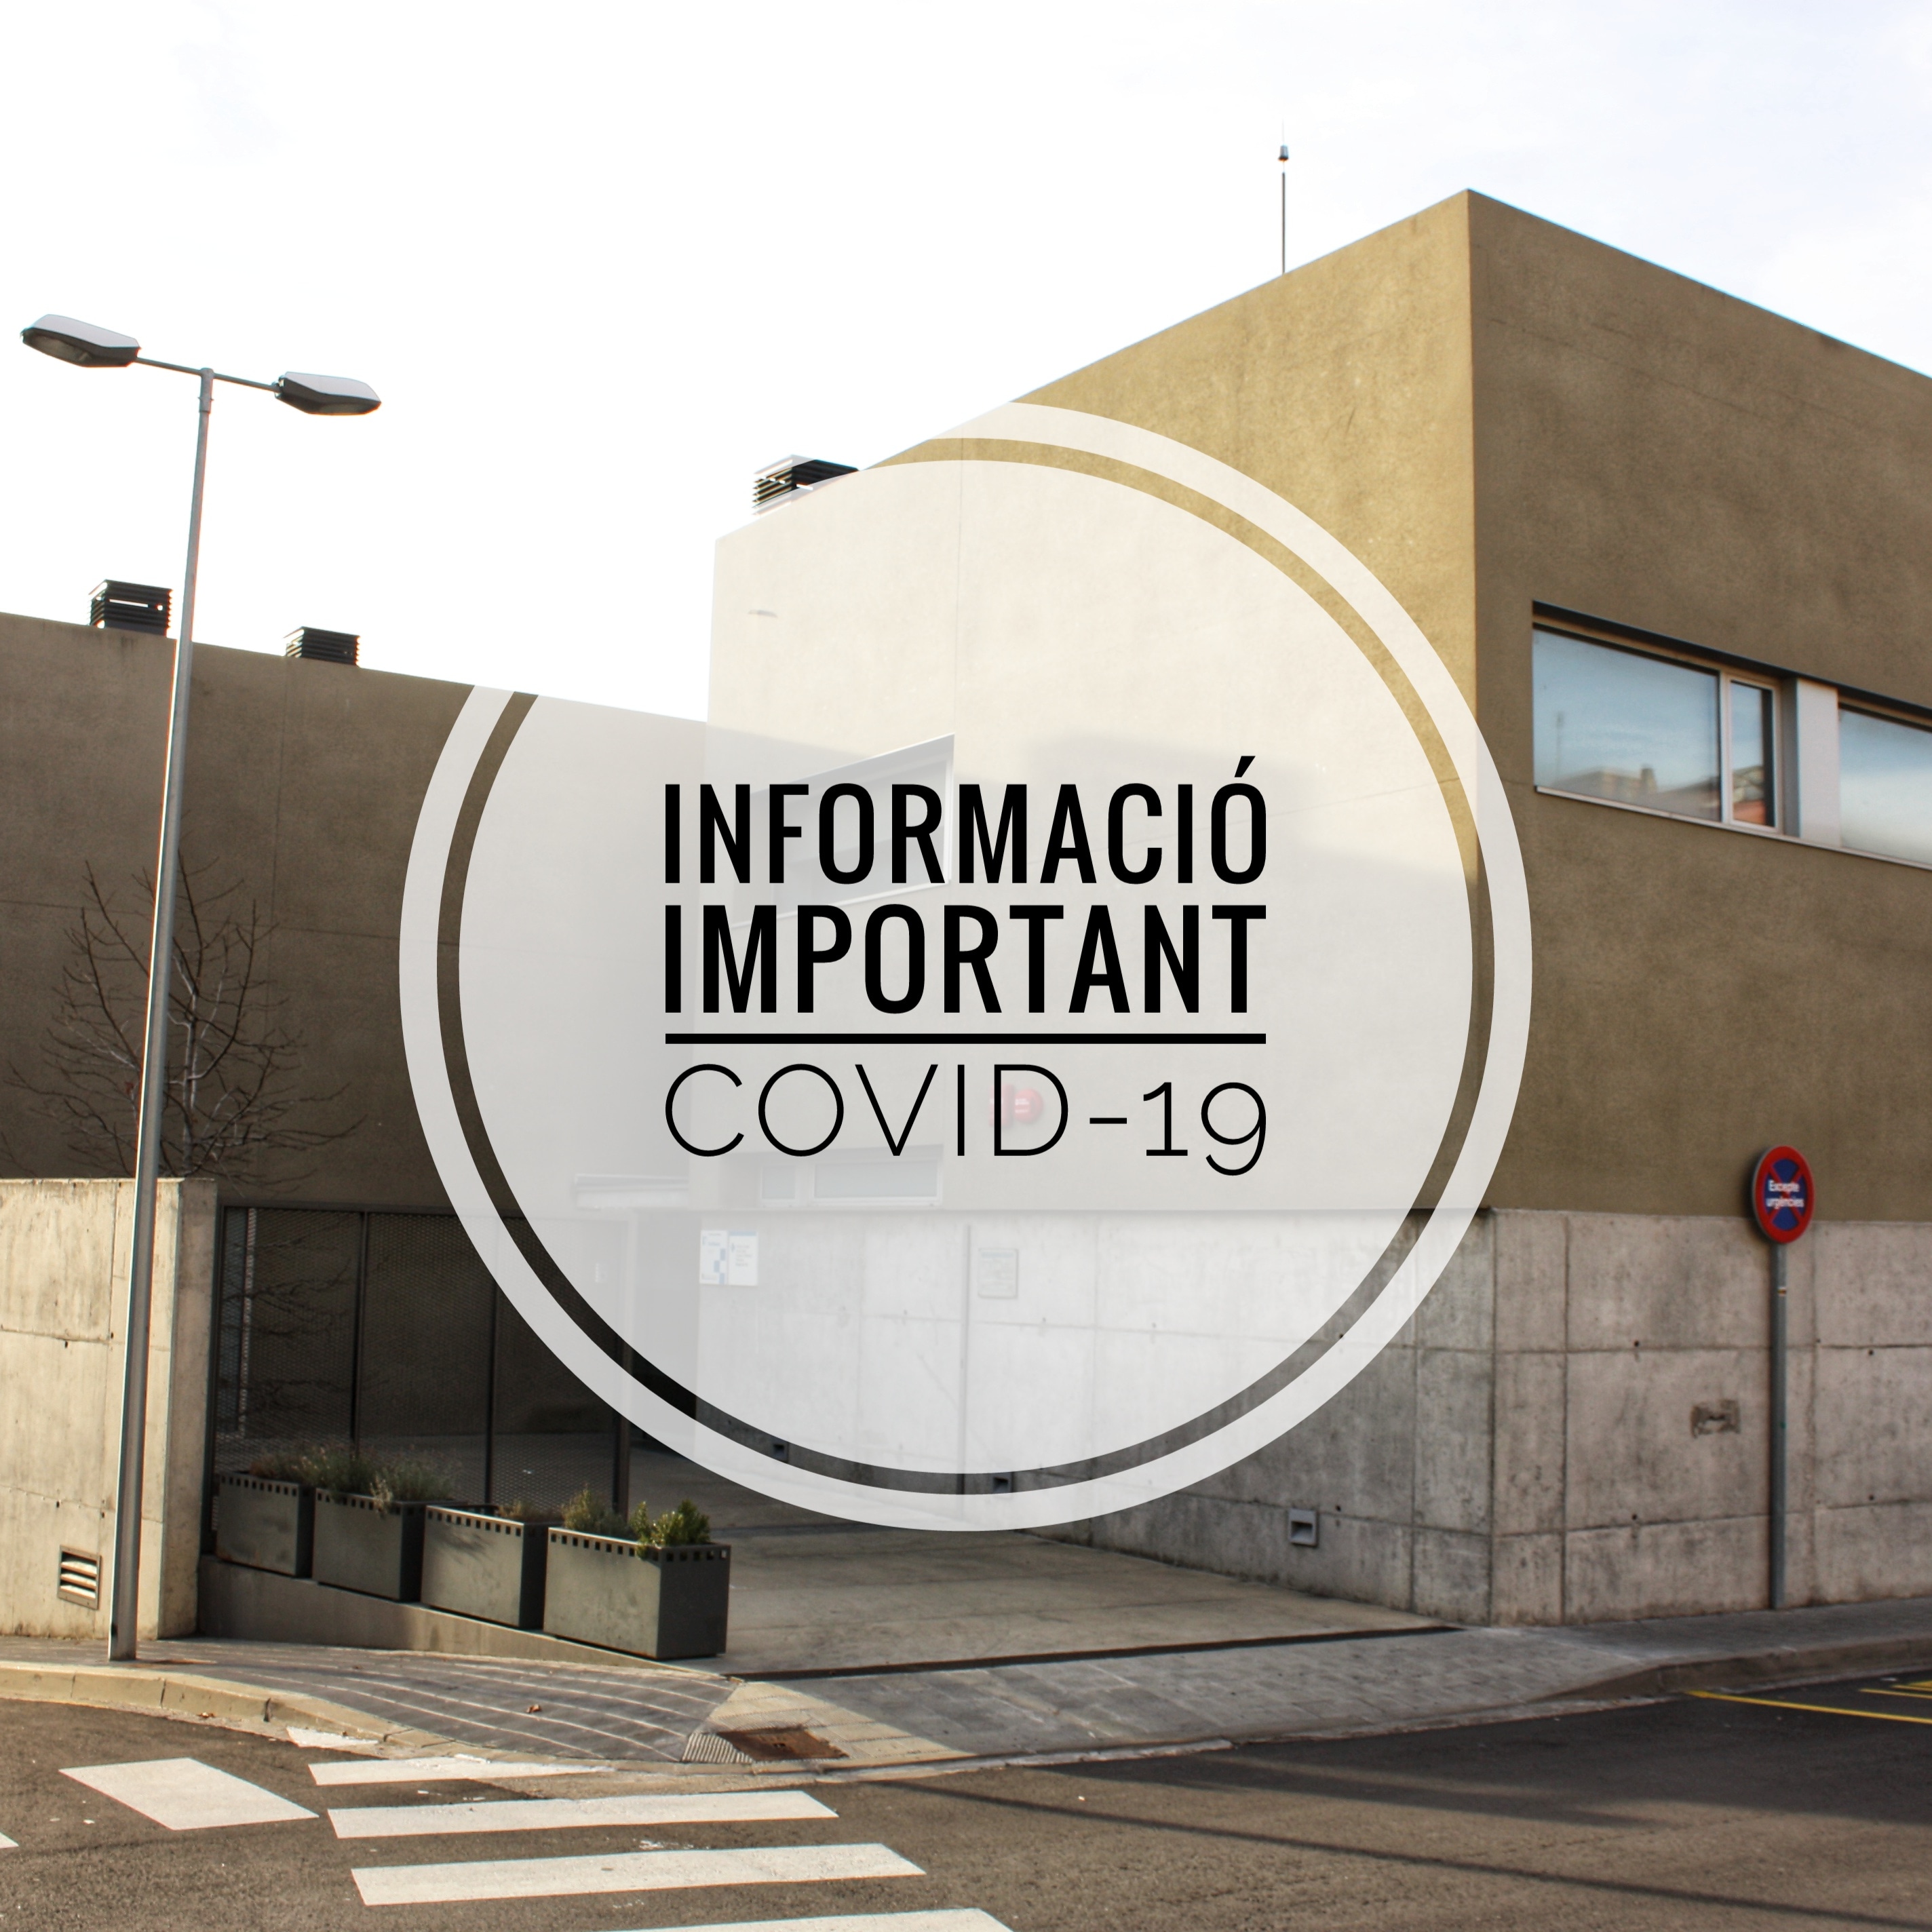 Informació important sobre la COVID-19